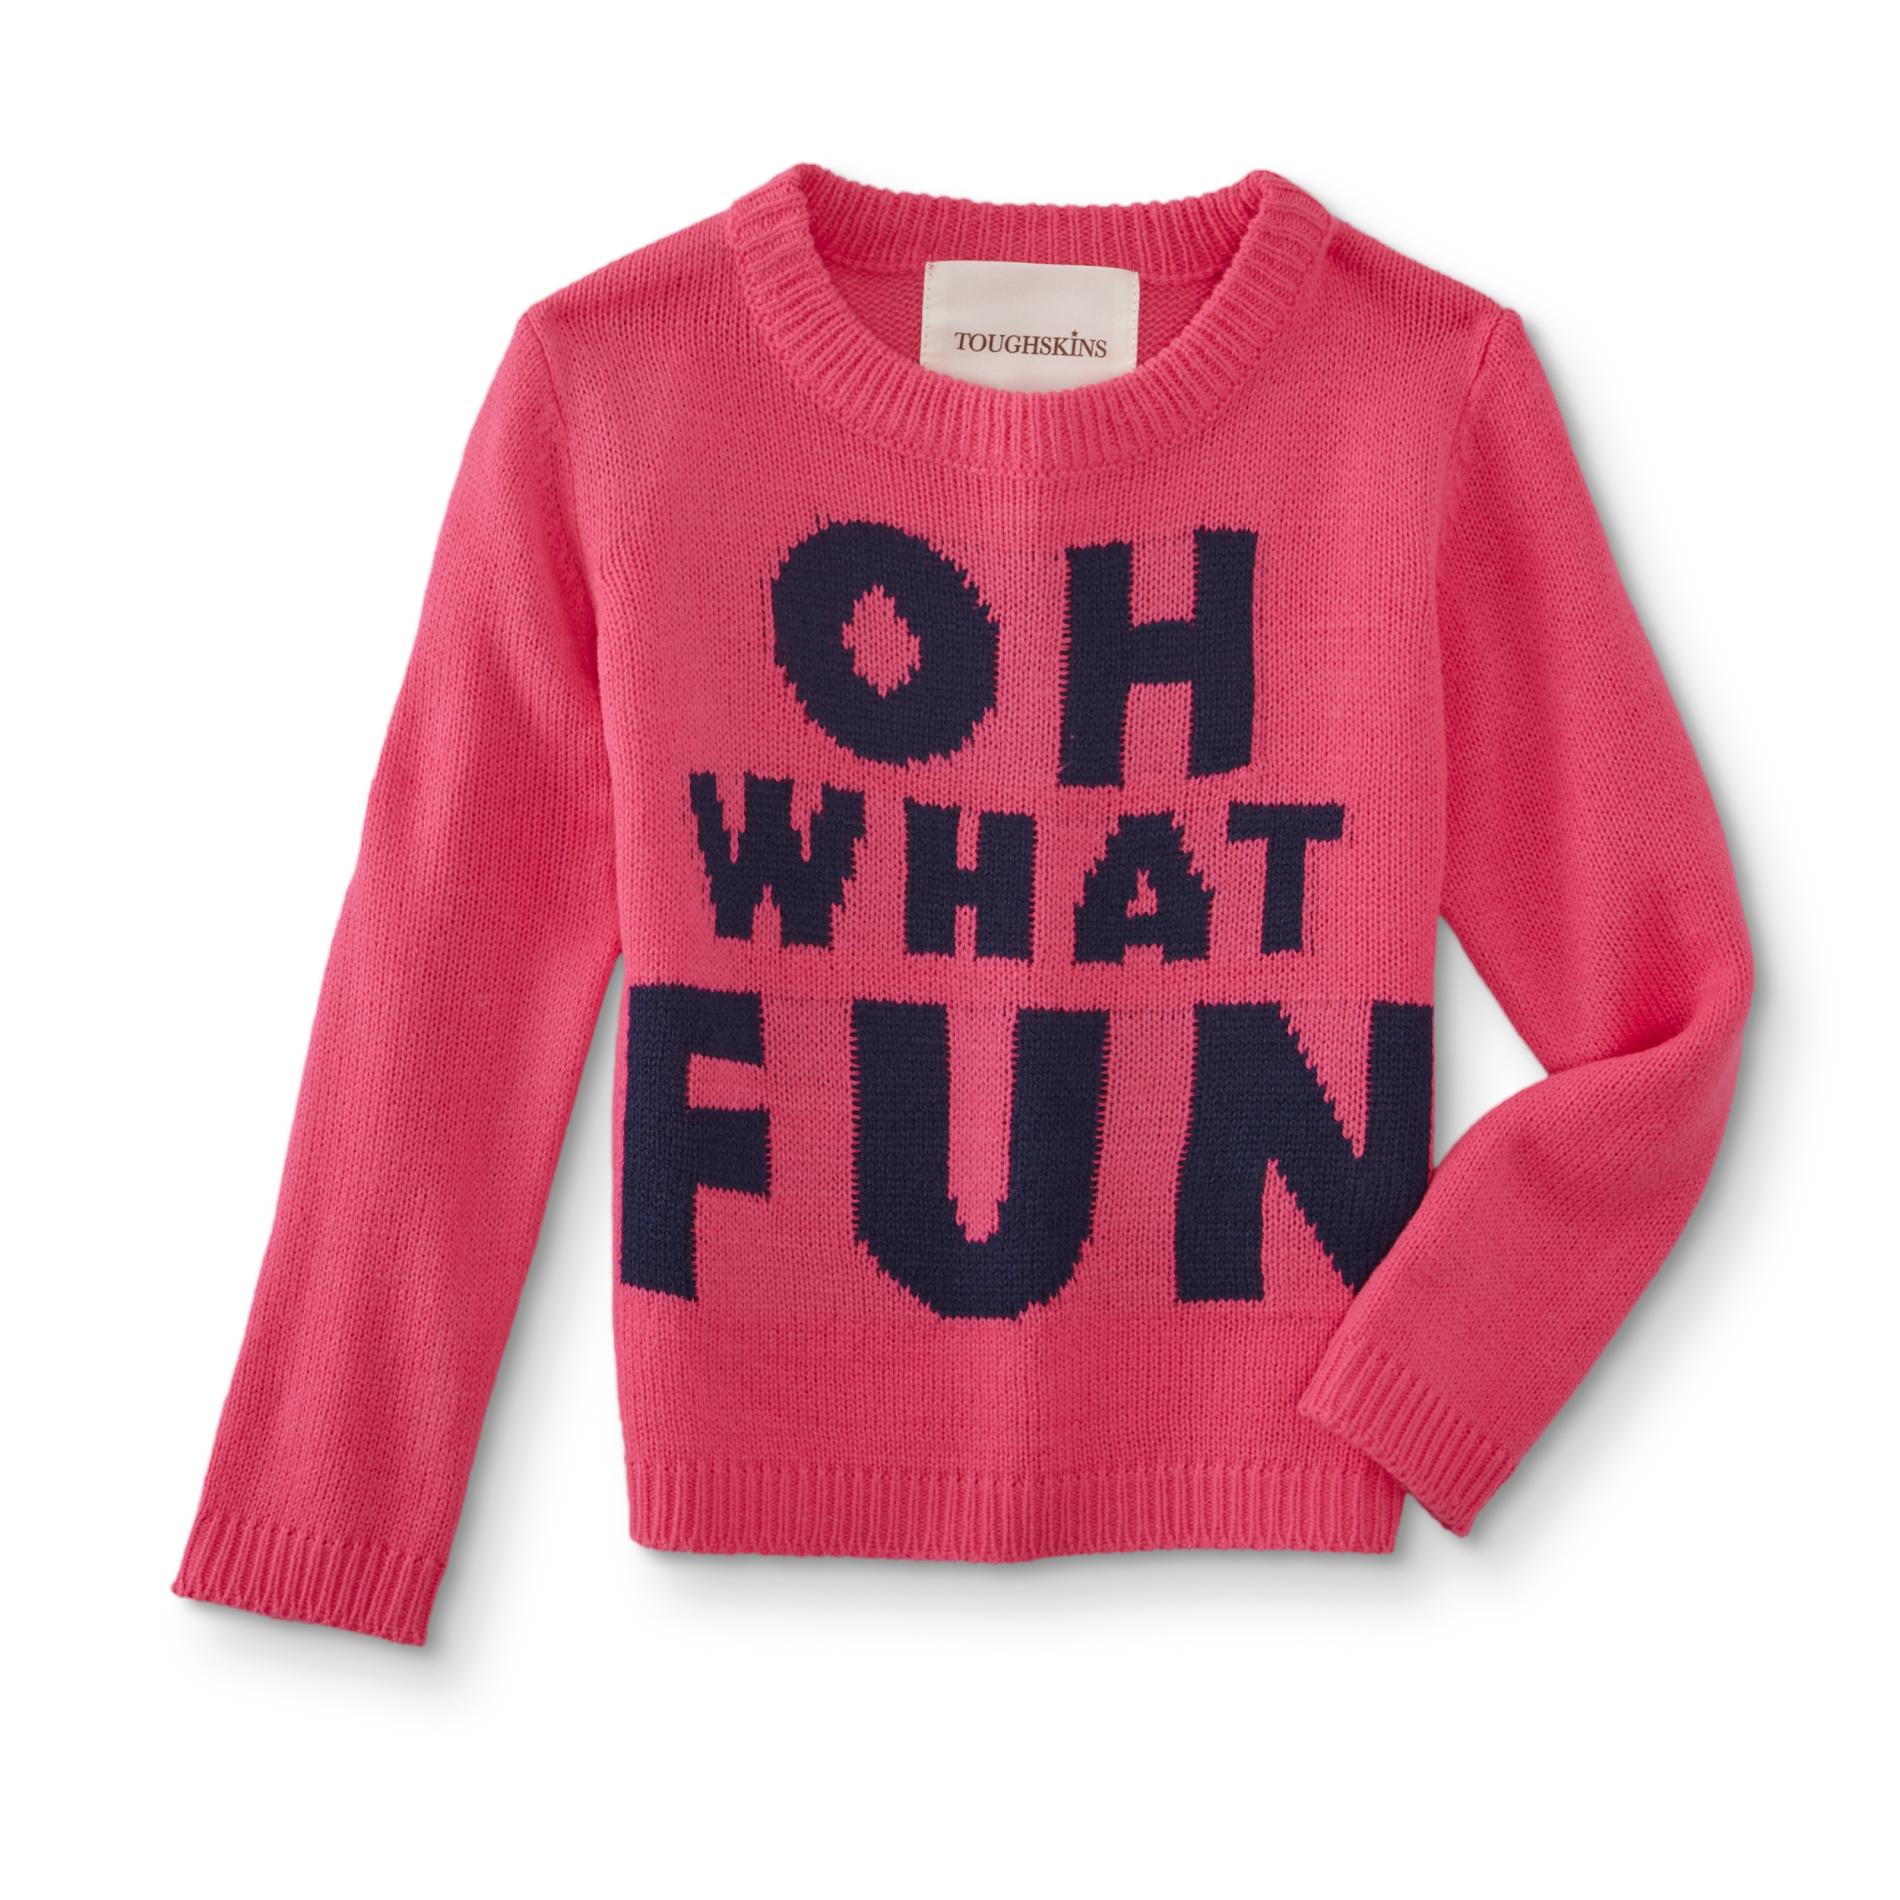 Toughskins Infant & Toddler Girls' Sweater - What Fun